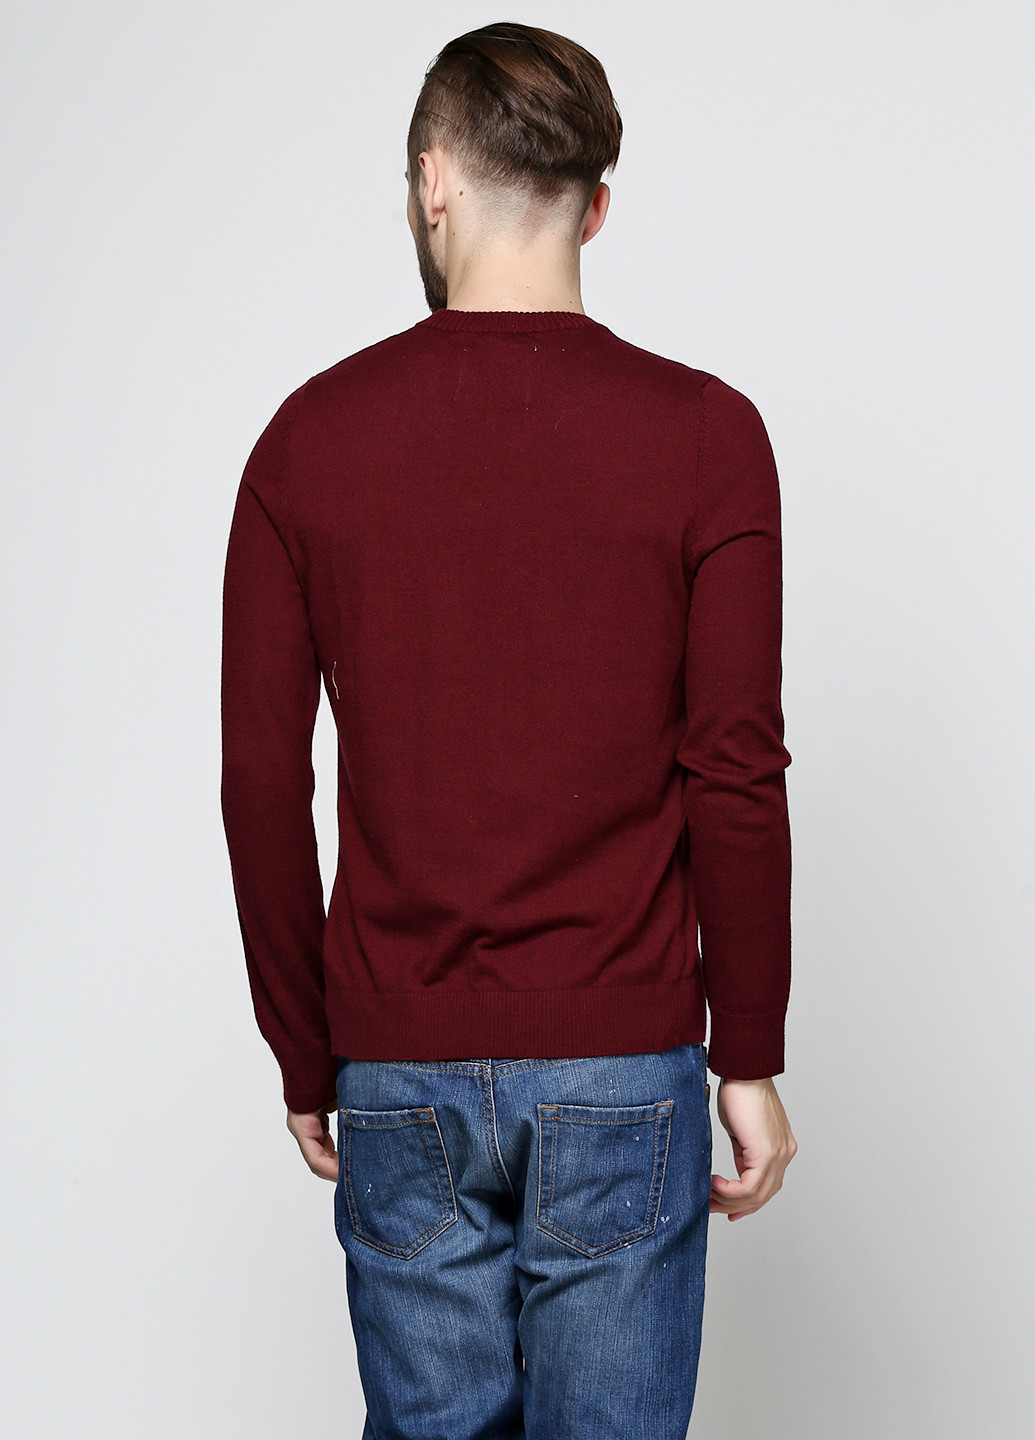 Бордовый демисезонный пуловер пуловер Abercrombie & Fitch